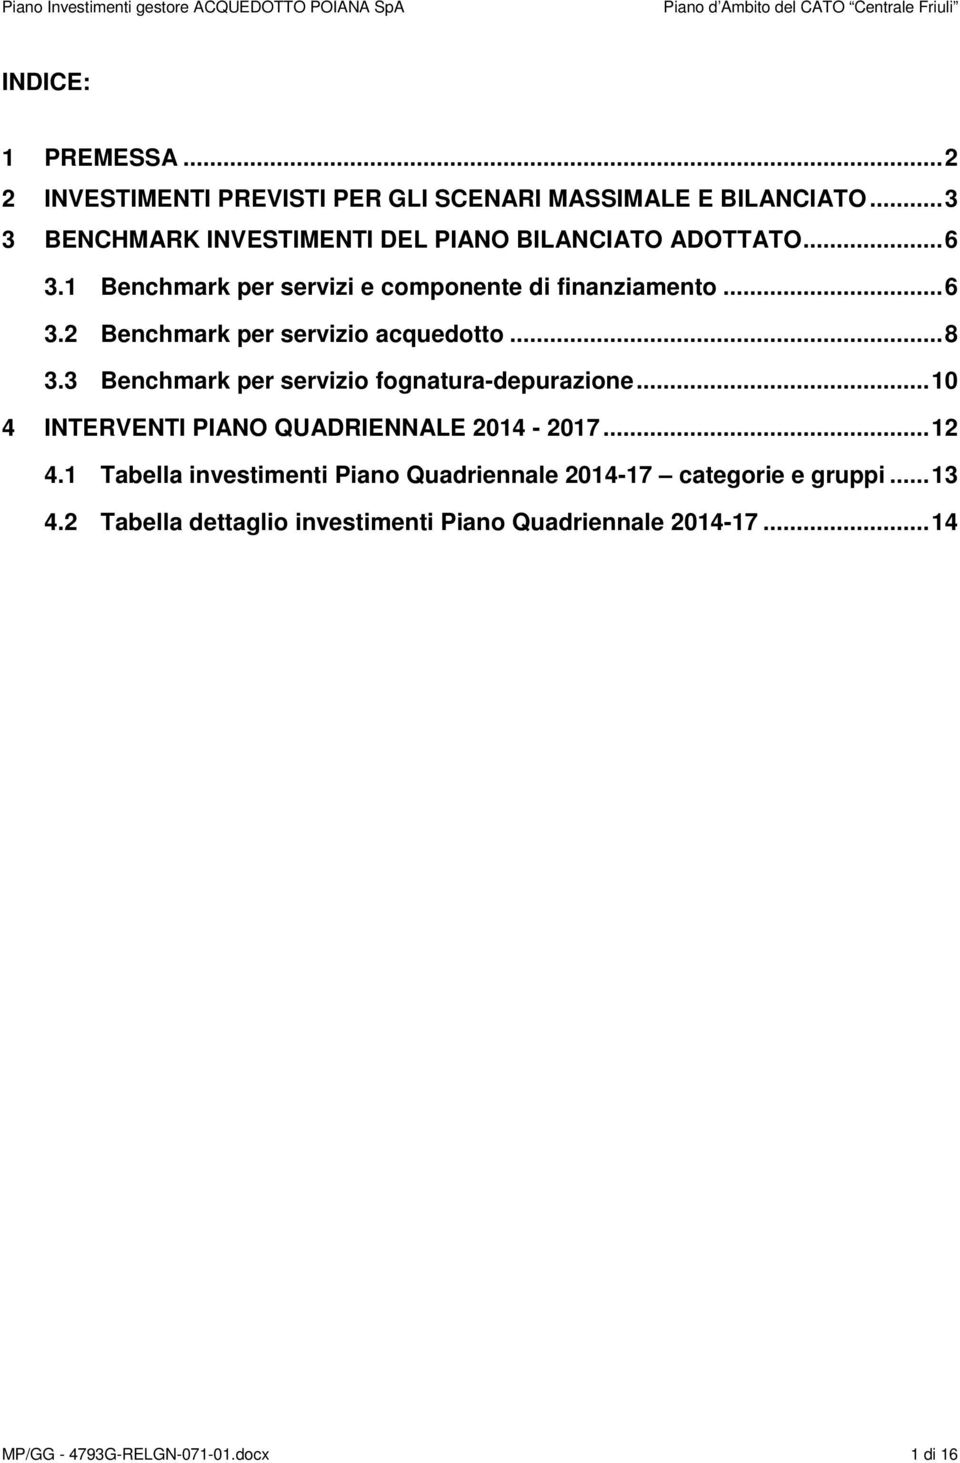 .. 8 3.3 Benchmark per servizio fognatura-depurazione... 10 4 INTERVENTI PIANO QUADRIENNALE 2014-2017... 12 4.